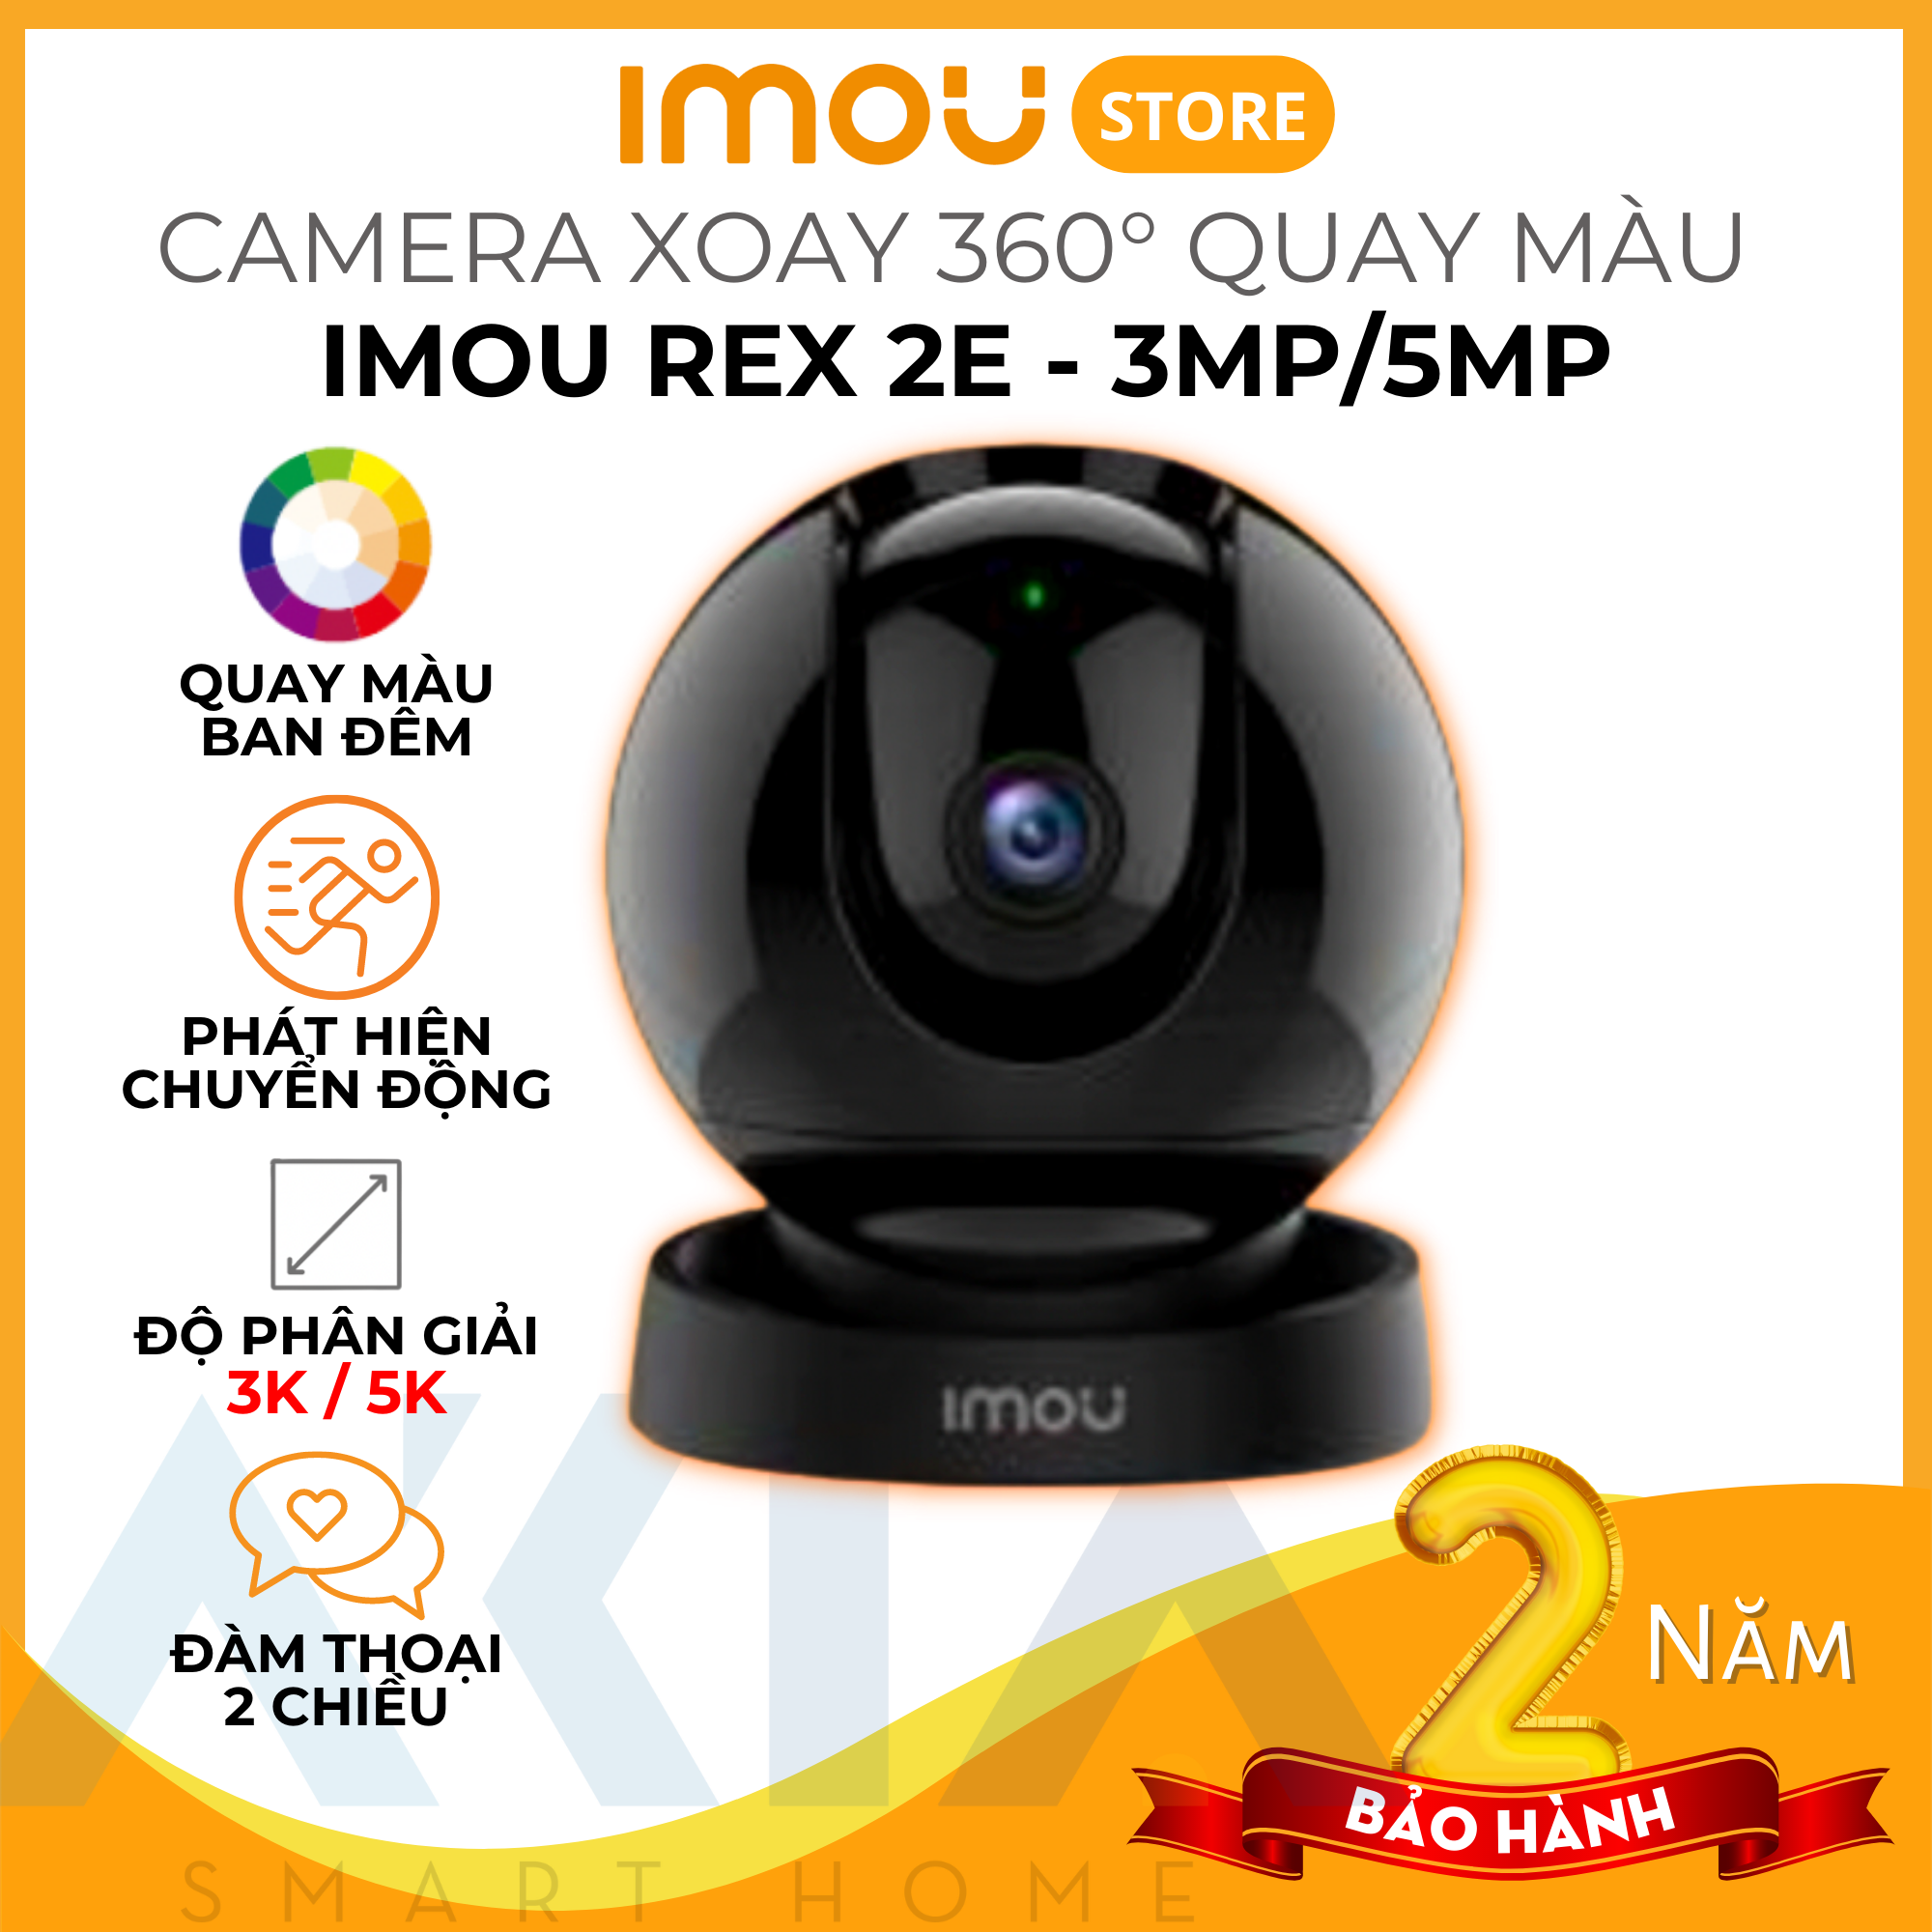 Camera Imou trong nhà Rex 2E 5MP - Camera có màu ban đêm, đàm thoại 2 chiều, theo dõi chuyển động - Hàng chính hãng